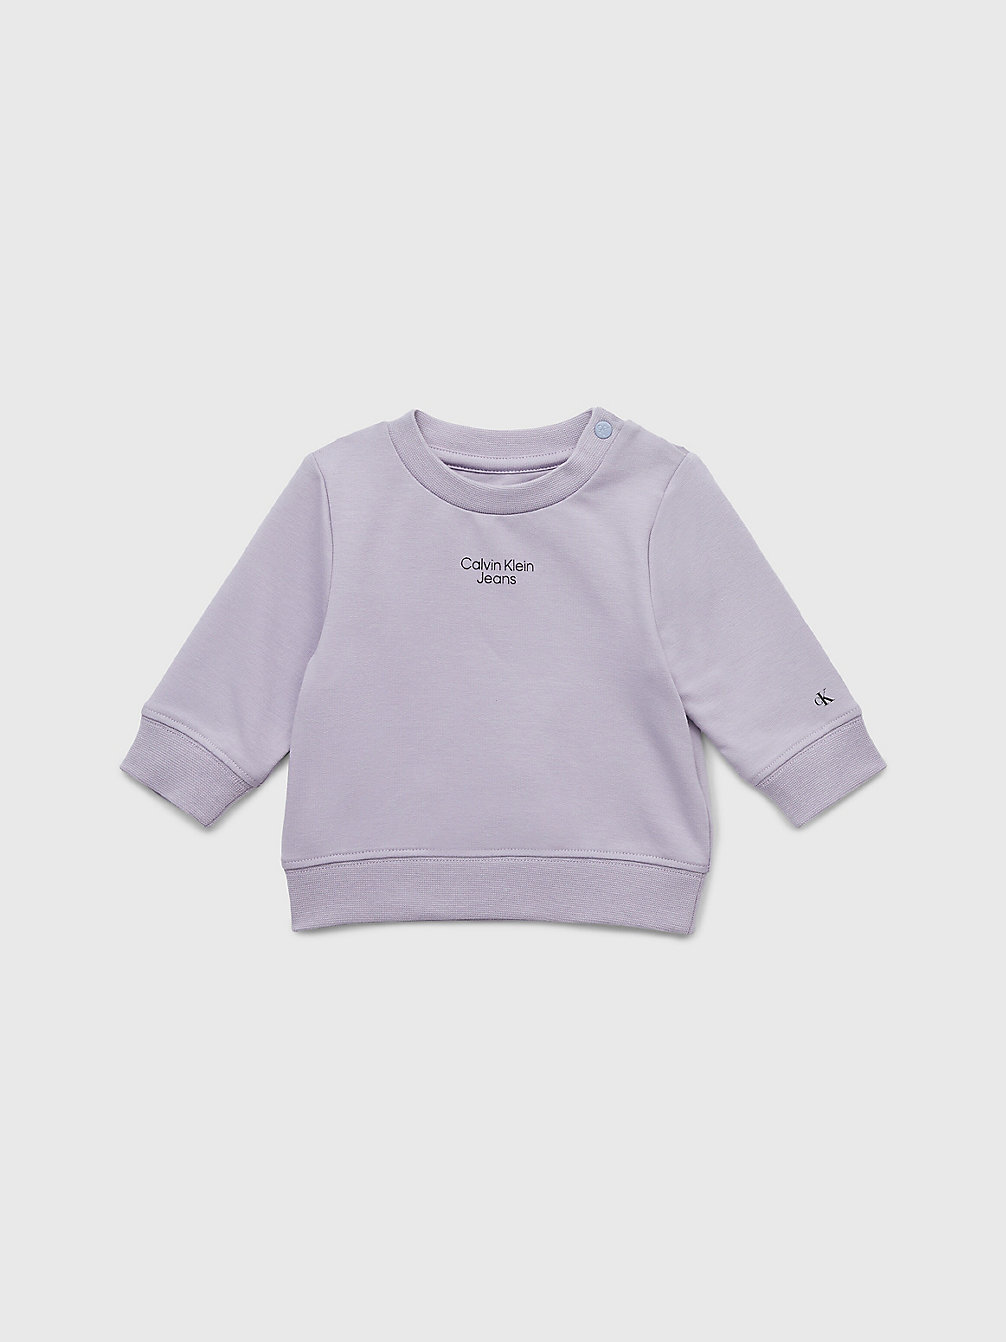 SMOKY LILAC Newborn Organic Cotton Sweatshirt undefined newborn Calvin Klein